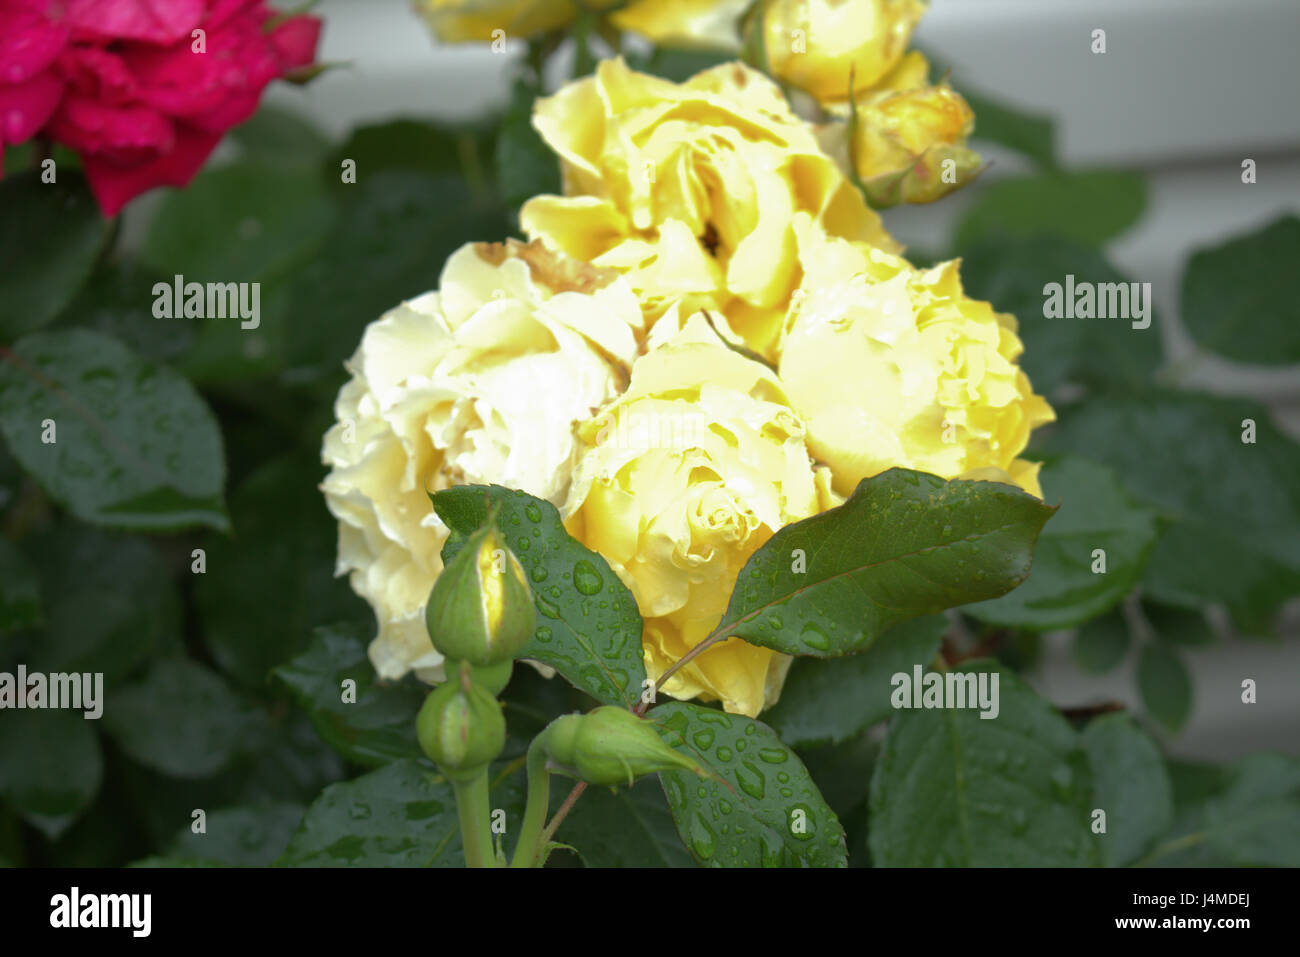 Gelbe Rosen mit Regentropfen. Rosen in voller Blüte und gebündelt zusammen... Stockfoto